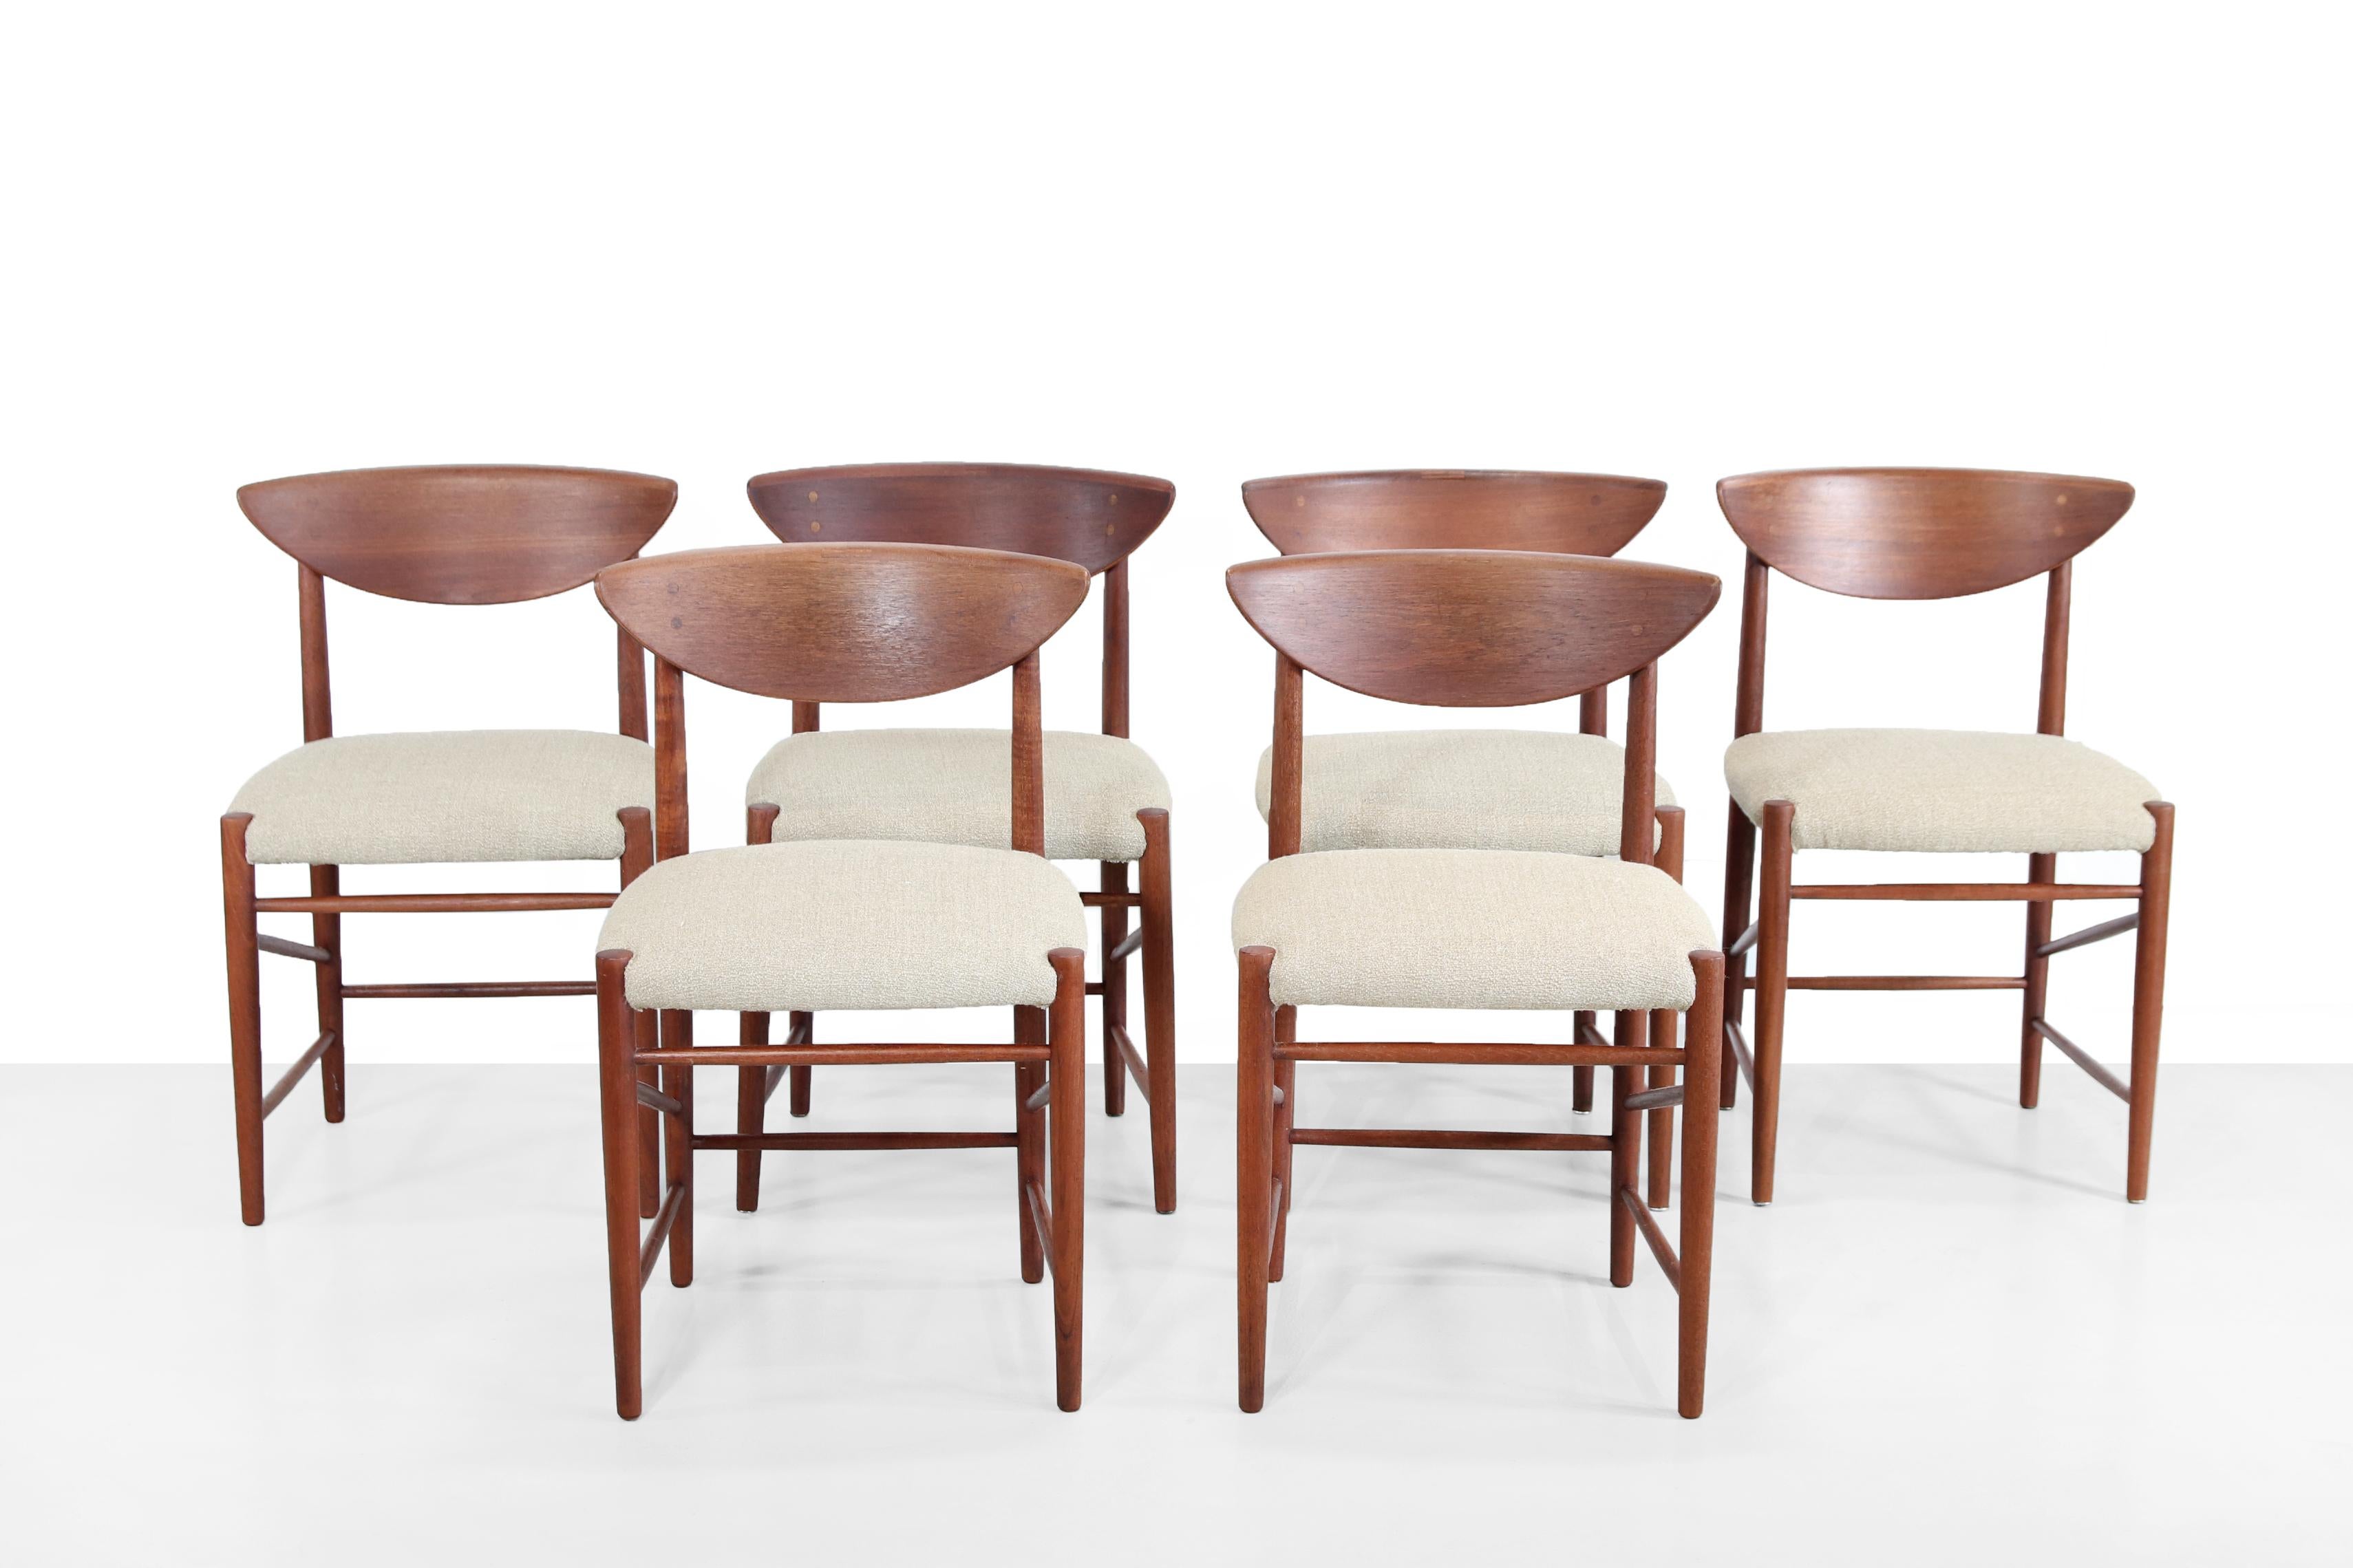 Ensemble de 6 chaises en teck modèle 316 conçues par Peter Hvidt et Orla Molgaard Nielsen au Danemark, 1955. Ces chaises ont une structure en teck massif et sont revêtues d'un tissu d'ameublement naturel de haute qualité. Leur assise est très souple